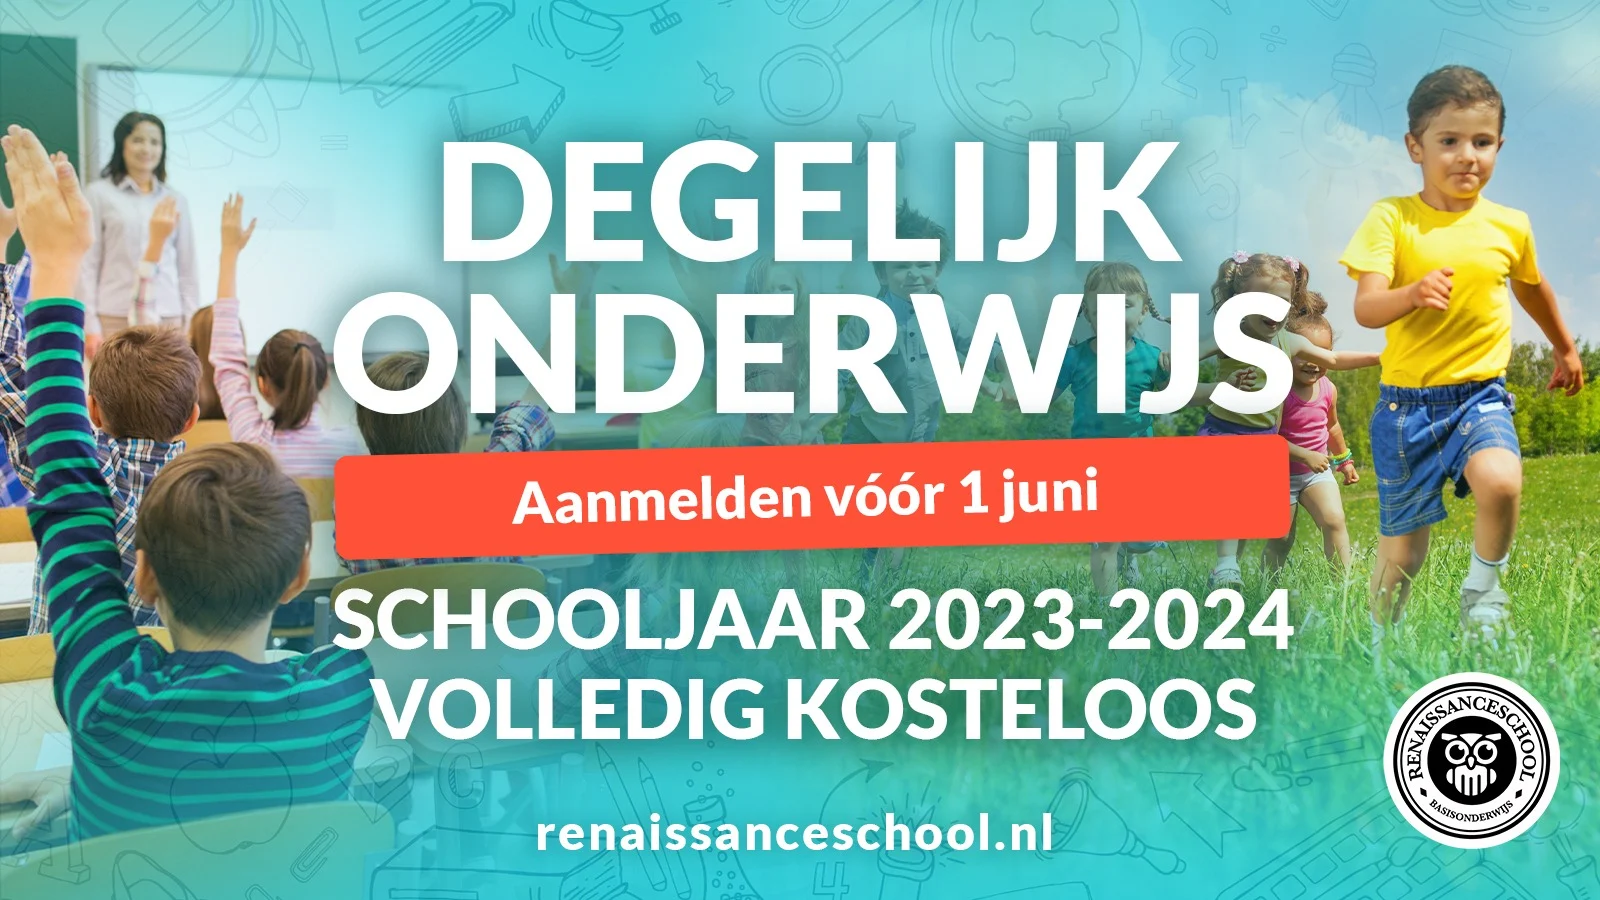 Renaissanceschool vindt sponsor: schooljaar 2023/2024 volledig gratis bij aanmelding vóór 1 juni